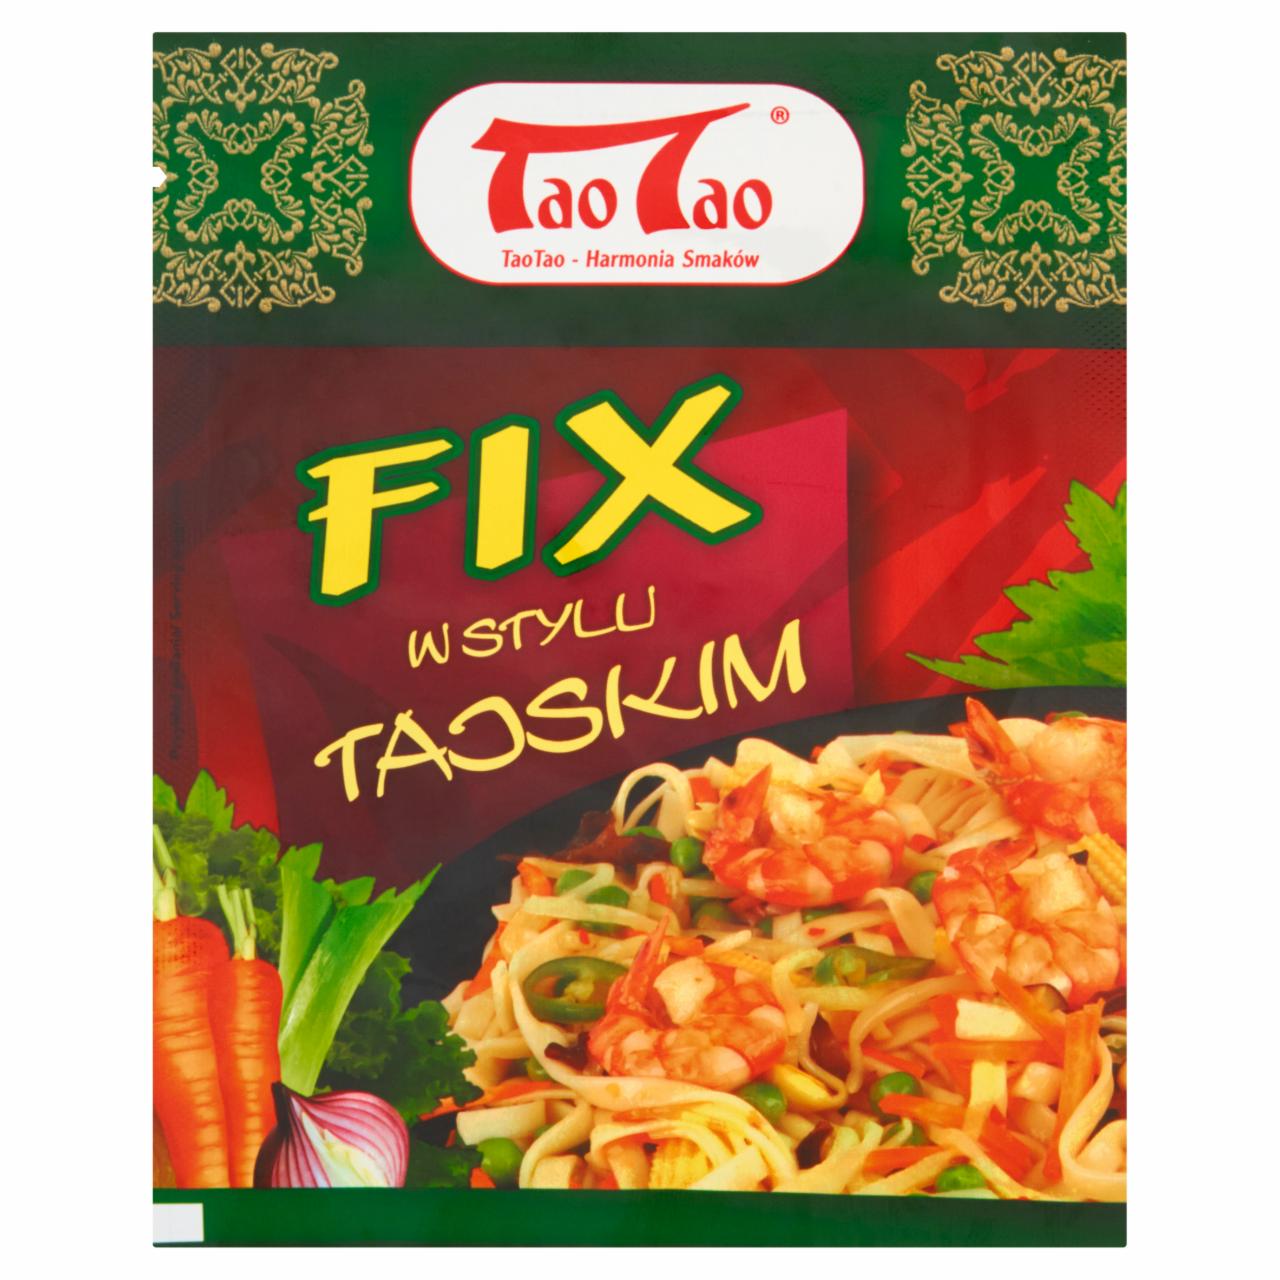 Zdjęcia - Tao Tao Fix w stylu tajskim 39 g